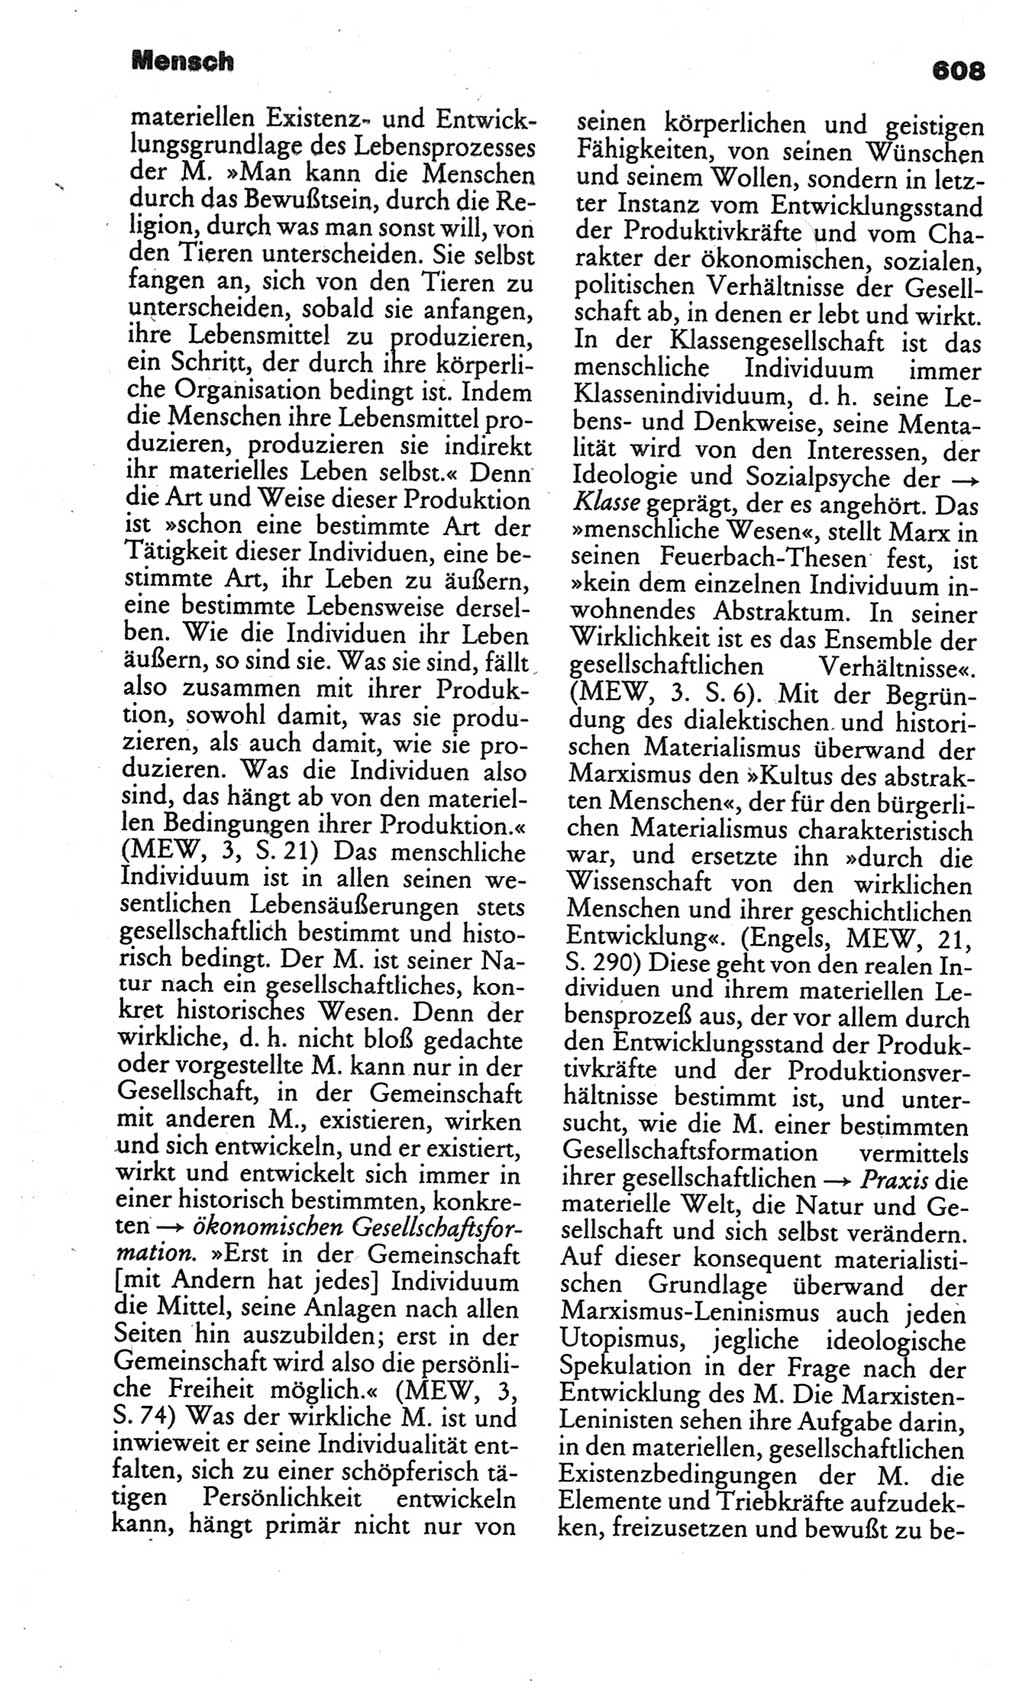 Kleines politisches Wörterbuch [Deutsche Demokratische Republik (DDR)] 1986, Seite 608 (Kl. pol. Wb. DDR 1986, S. 608)